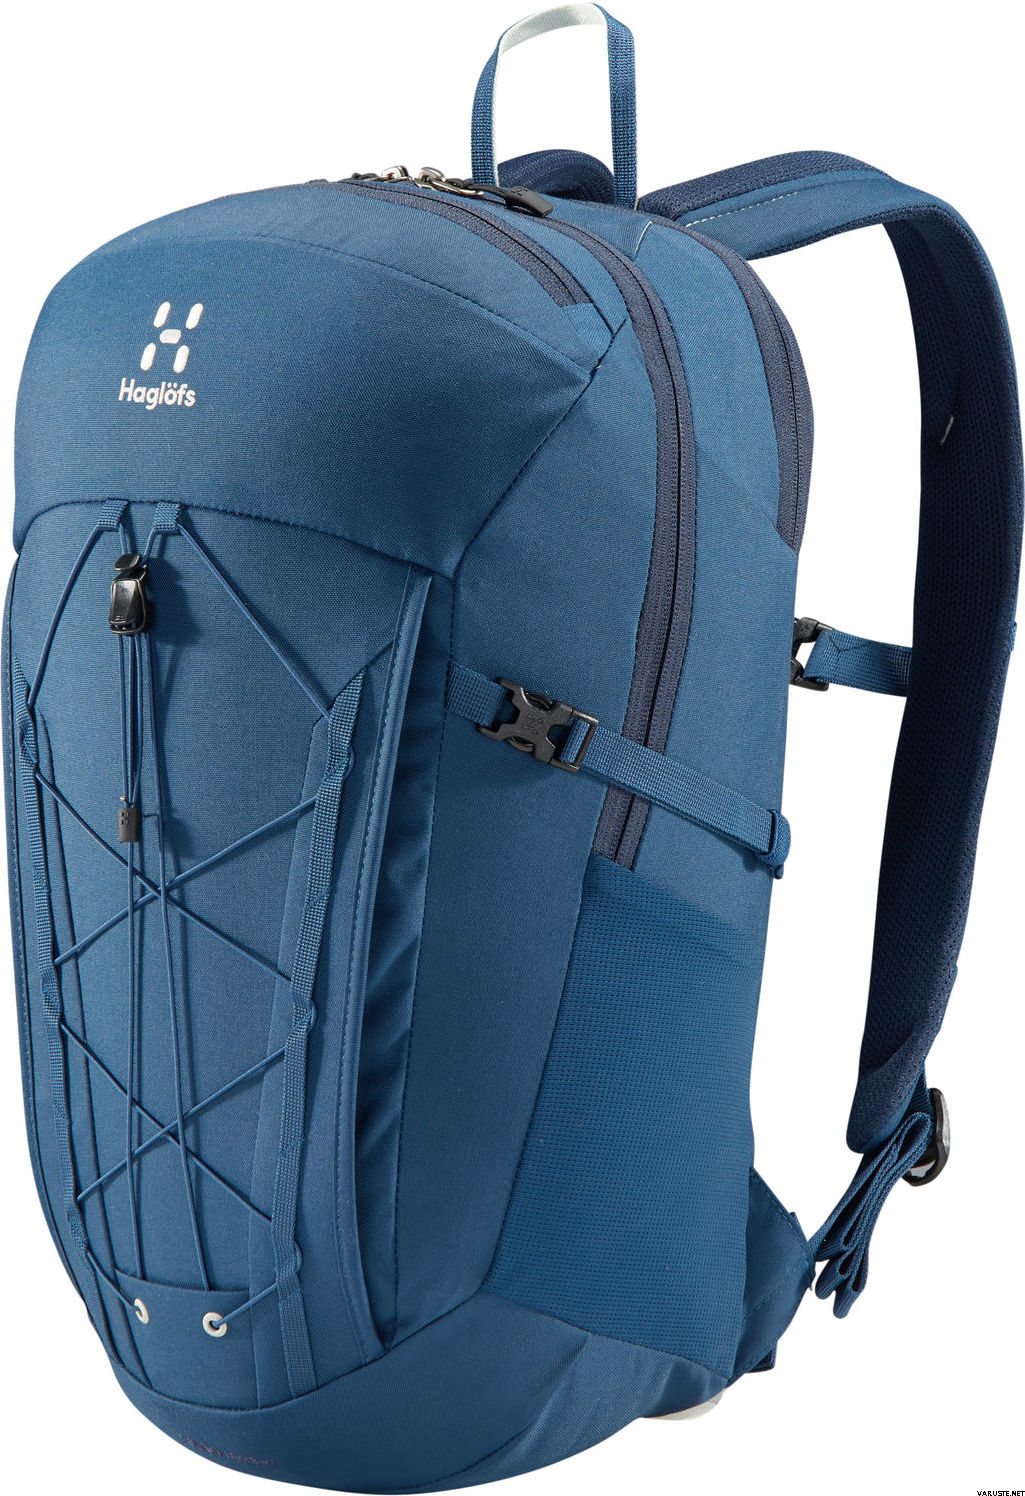 SALE EVENT Haglofs Vide Medium Backpack Blue Ink 